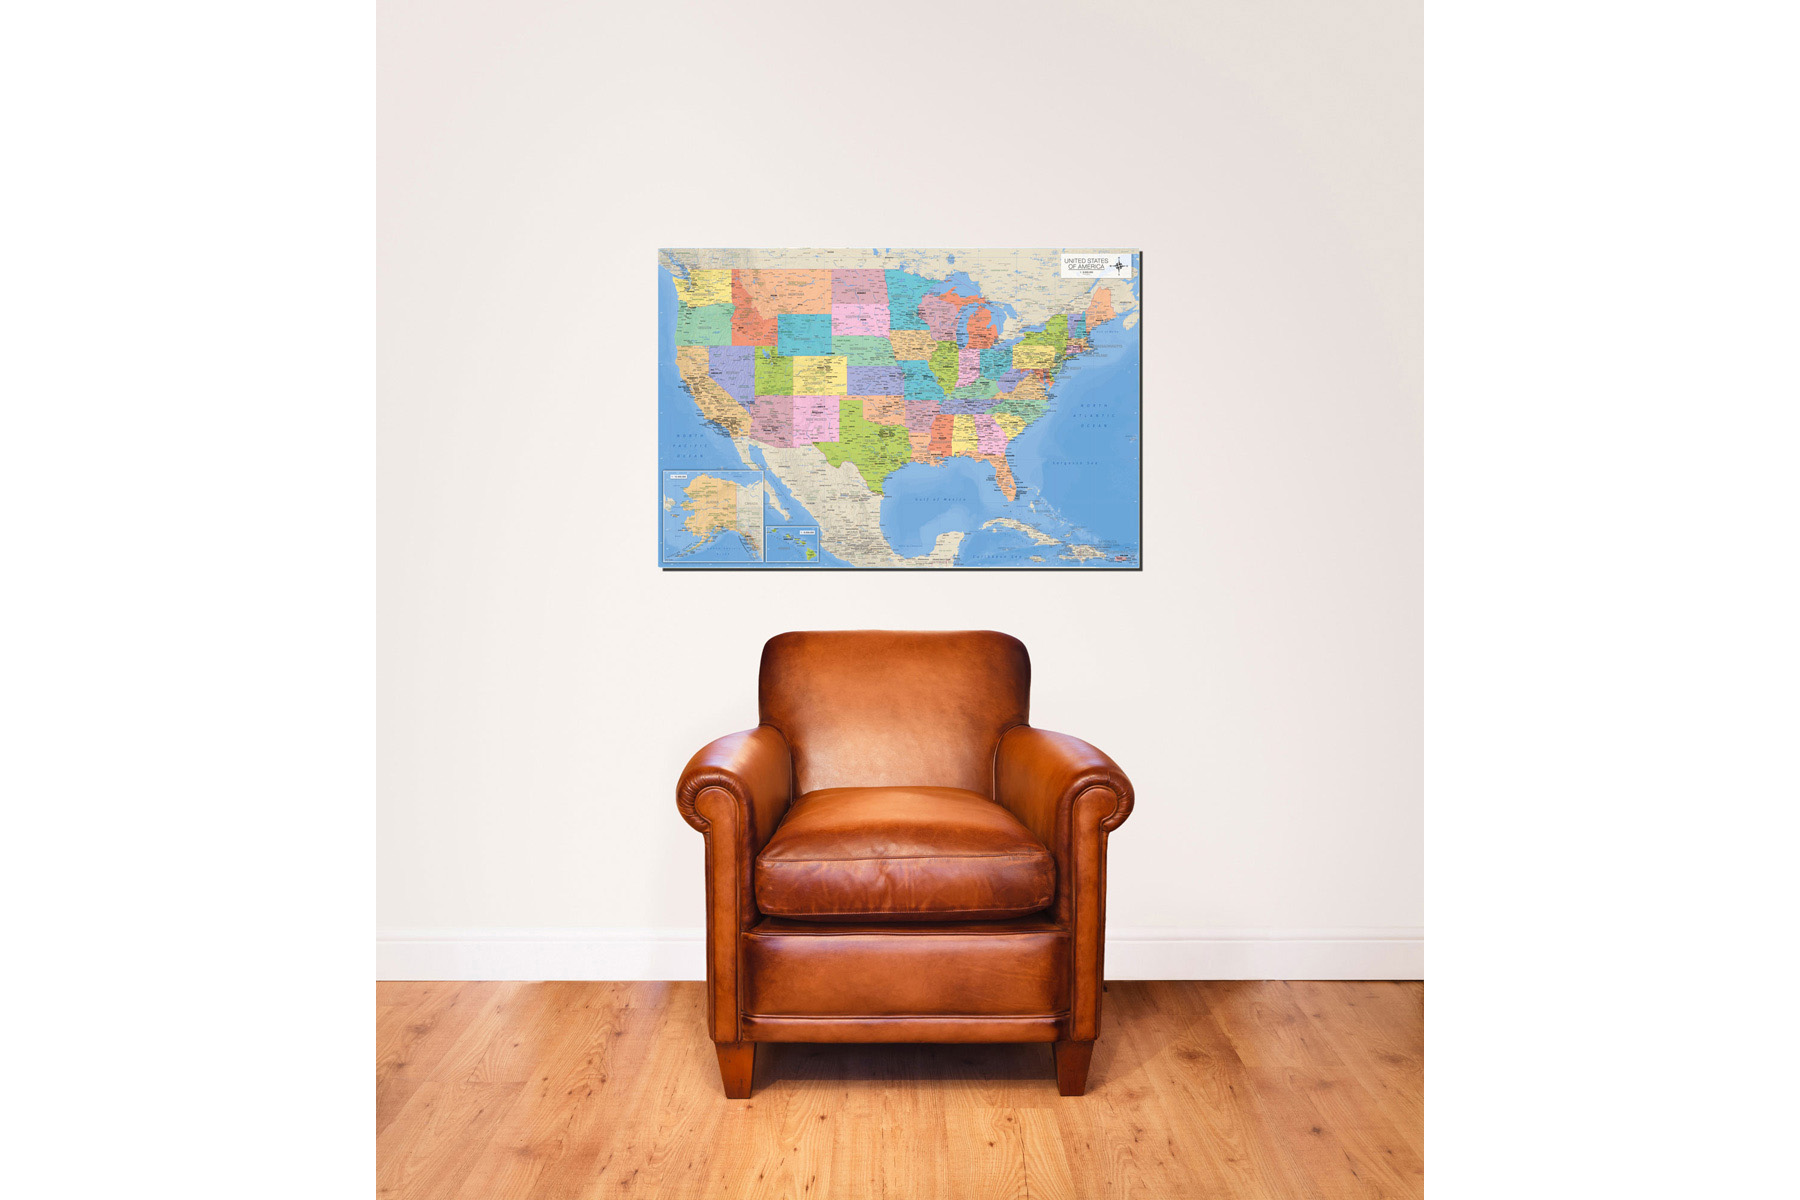 USA the Landkarten - Map of